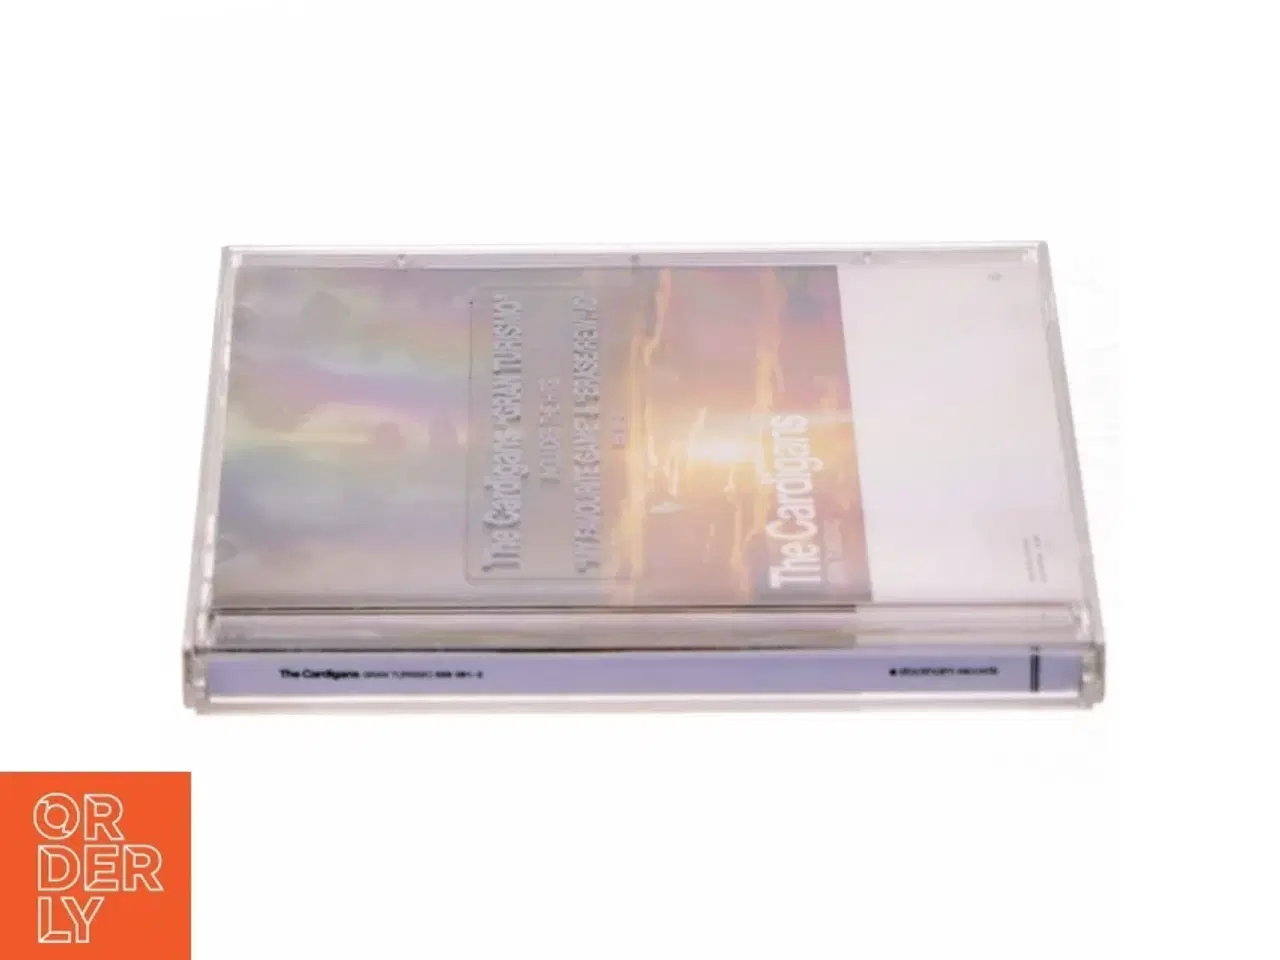 Billede 2 - The Cardigans - Gran Turismo CD fra Stockholm Records